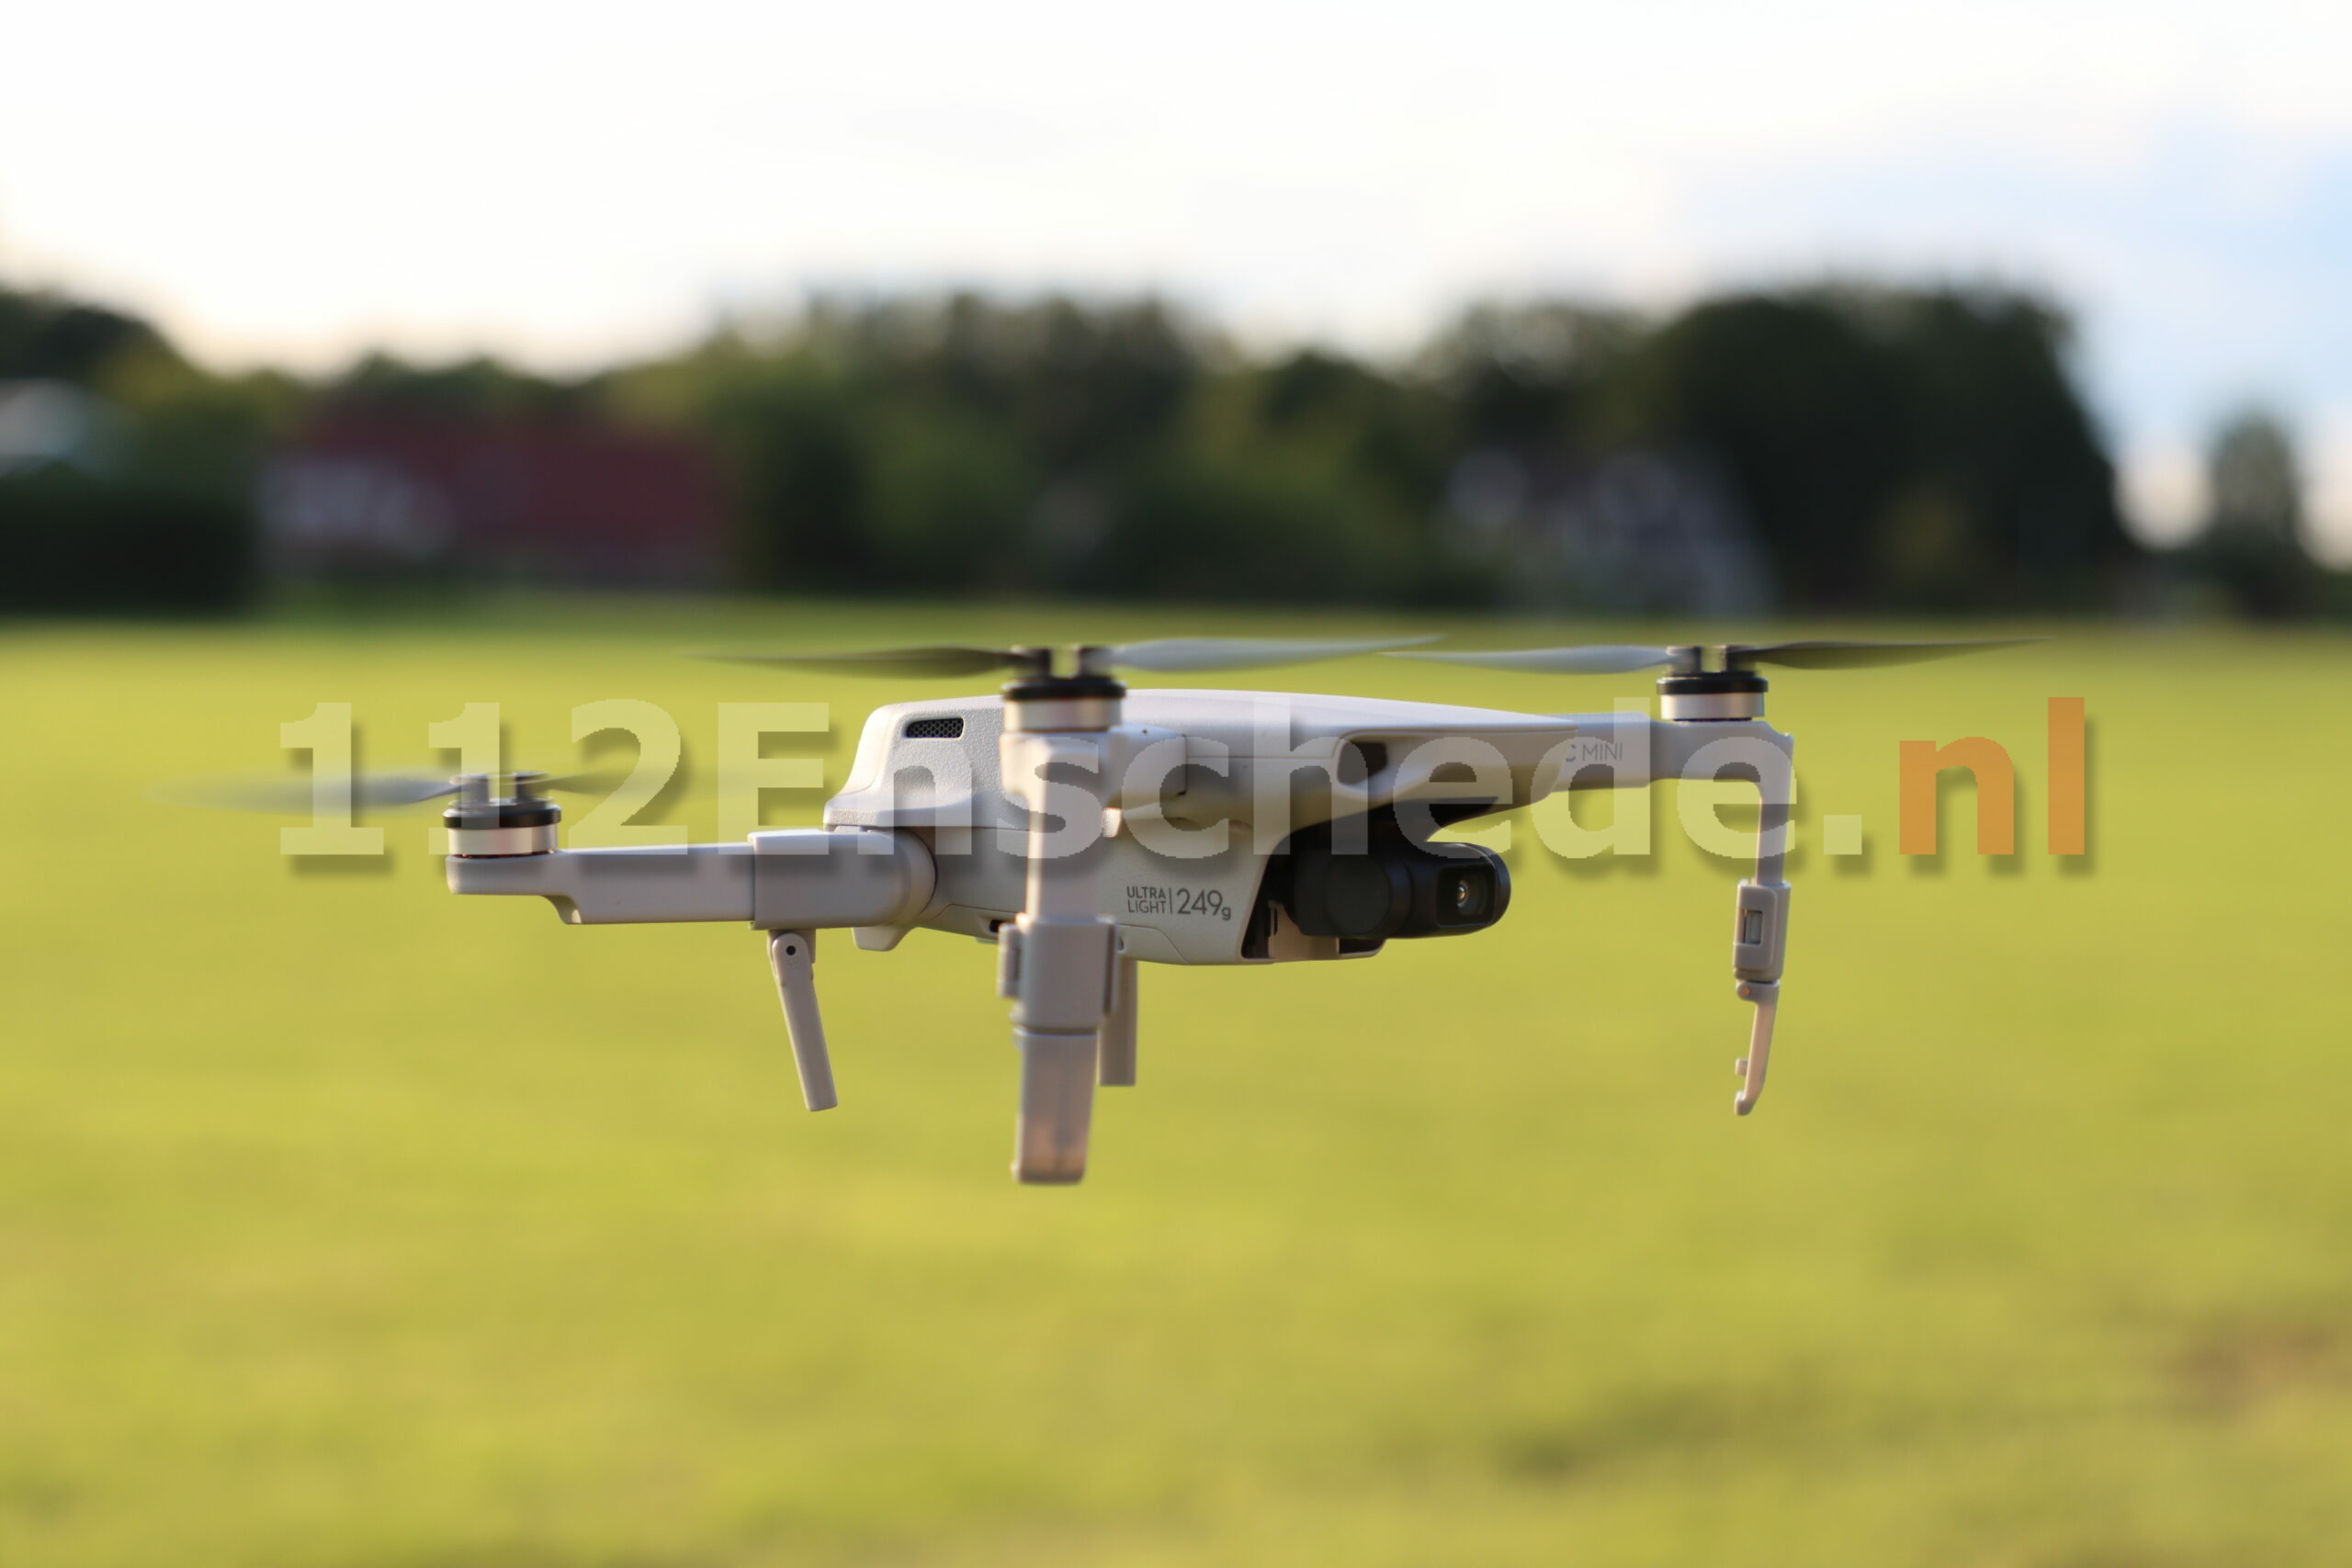 Drone stort neer bij luchthaven Twente; twee personen meegenomen door Marechaussee